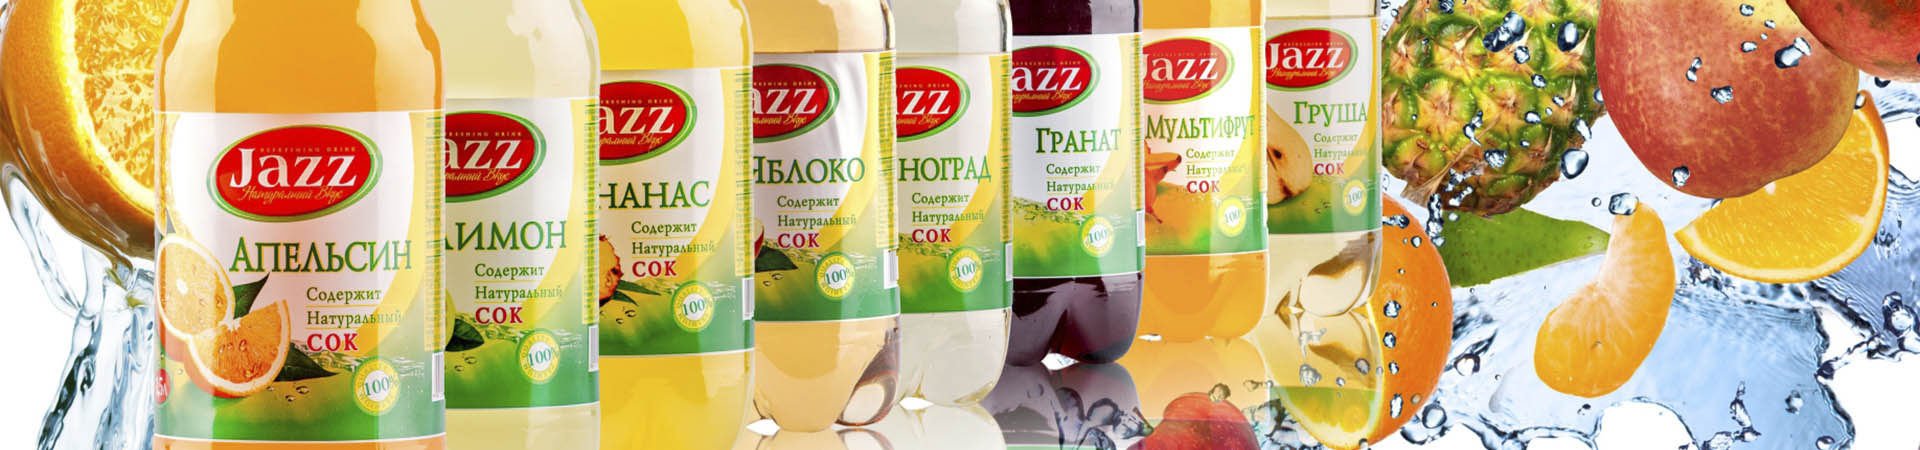 Сокосодержащие напитки «JAZZ» 